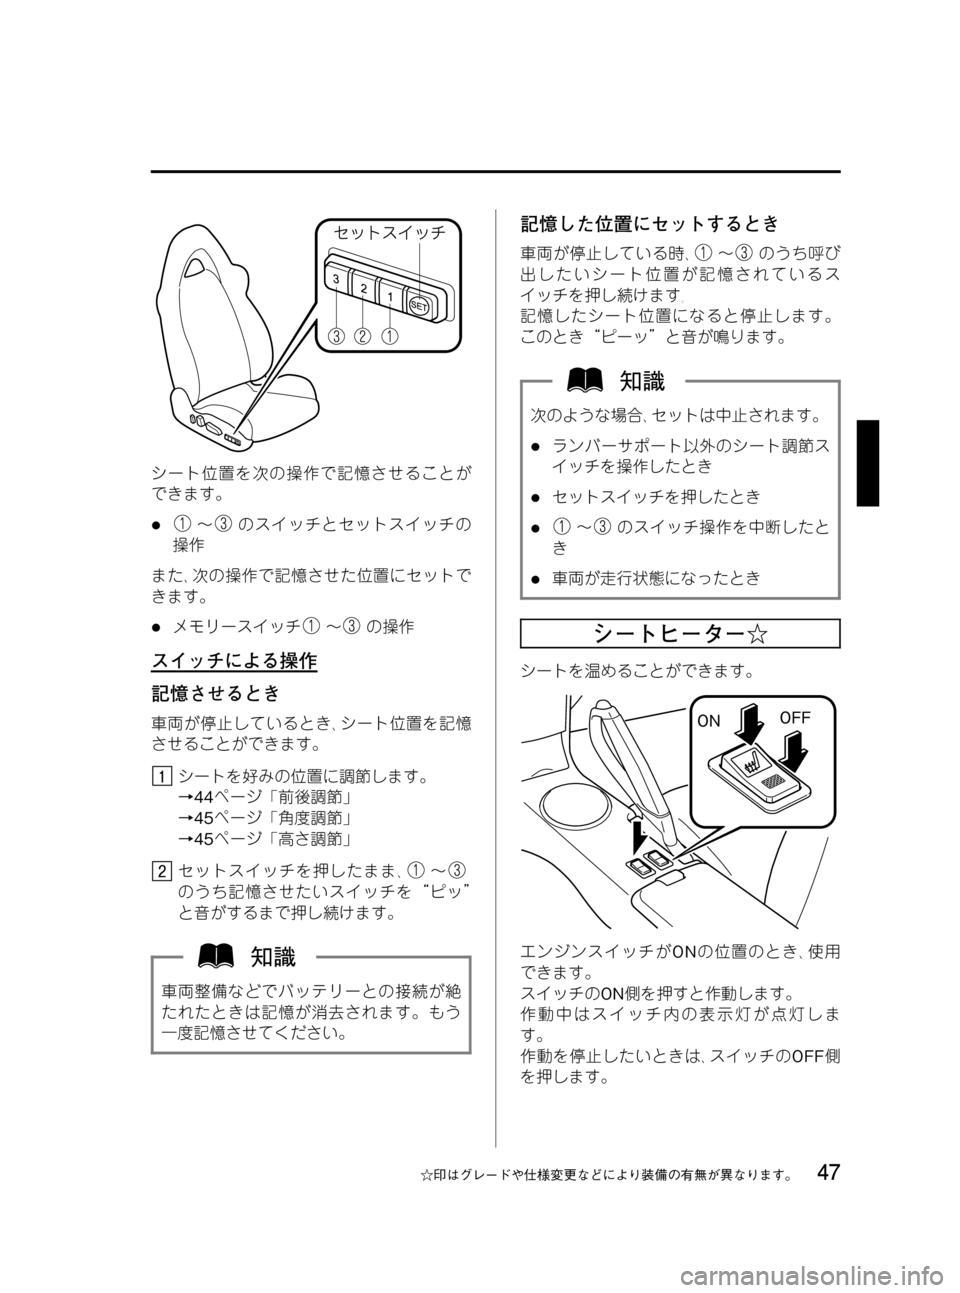 MAZDA MODEL RX 8 2008  取扱説明書 (in Japanese) Black plate (47,1)
シート位置を次の操作で記憶させることが
できます。
l～のスイッチとセットスイッチの
操作
また､次の操作で記憶させた位置にセ�